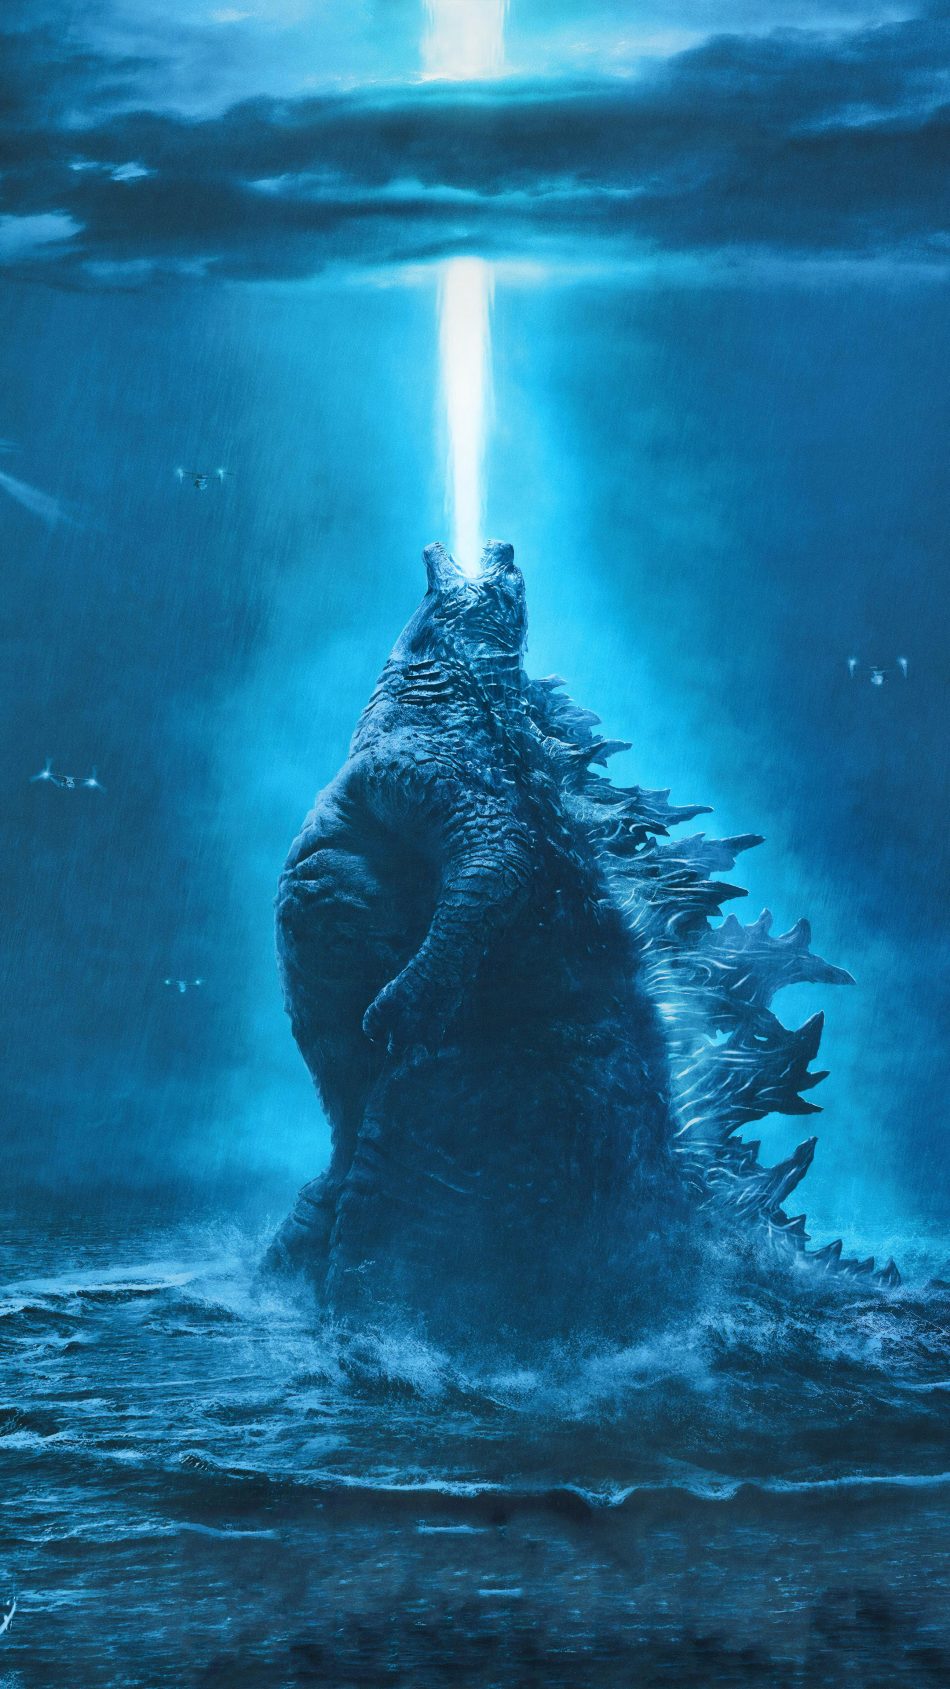 Godzilla: Khám phá vẻ đẹp của quái thú huyền thoại Godzila trong bức ảnh này. Con quái vật khổng lồ, là biểu tượng trong những bộ phim kinh dị, sẽ khiến bạn thấy sự kì diệu và thú vị.